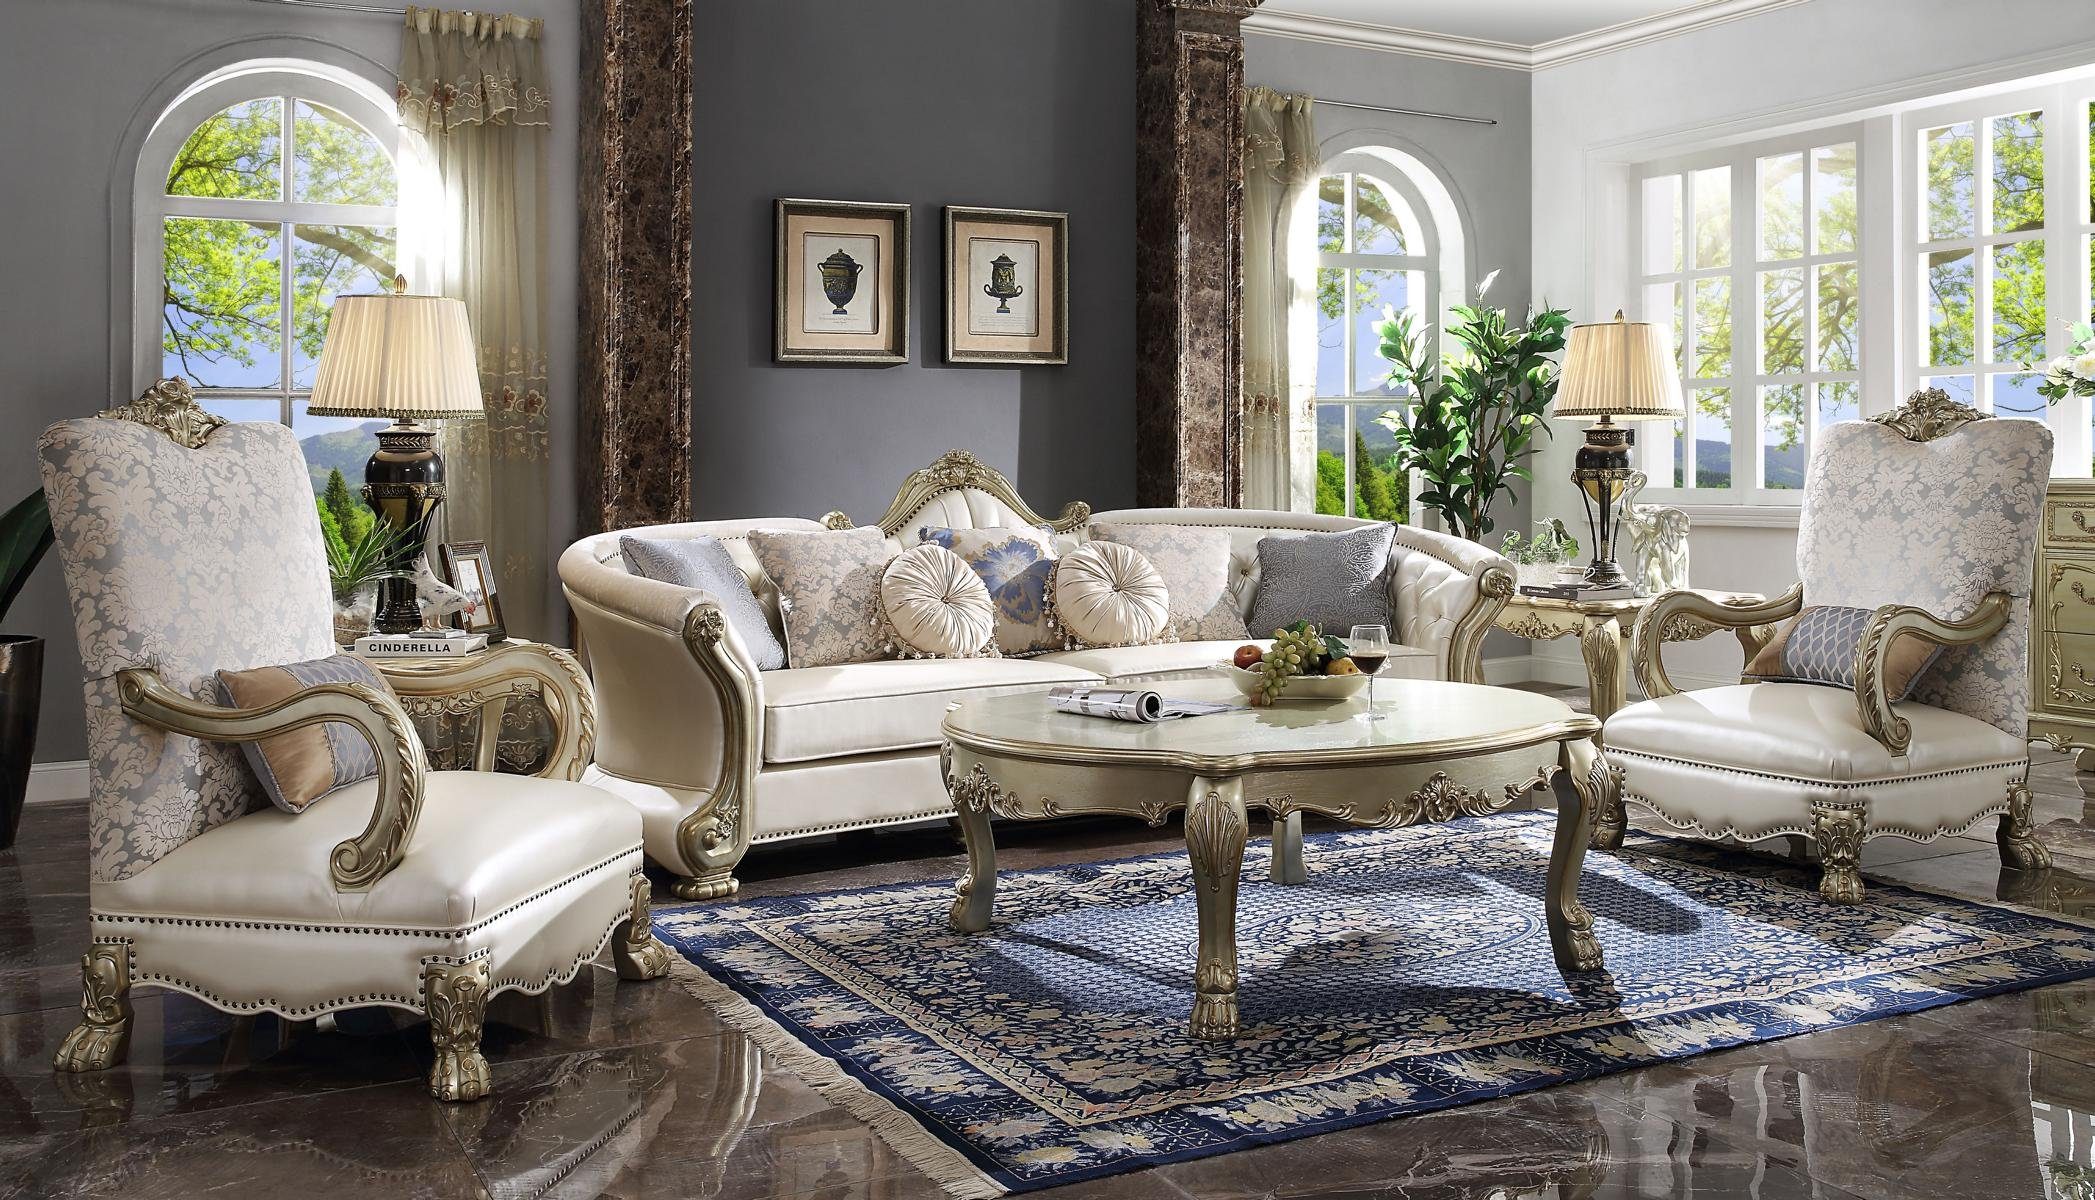 JVmoebel Wohnzimmer-Set, Luxus Möbel Sofagarnitur Couch Sofa Polster 4+1+1 Sitzer